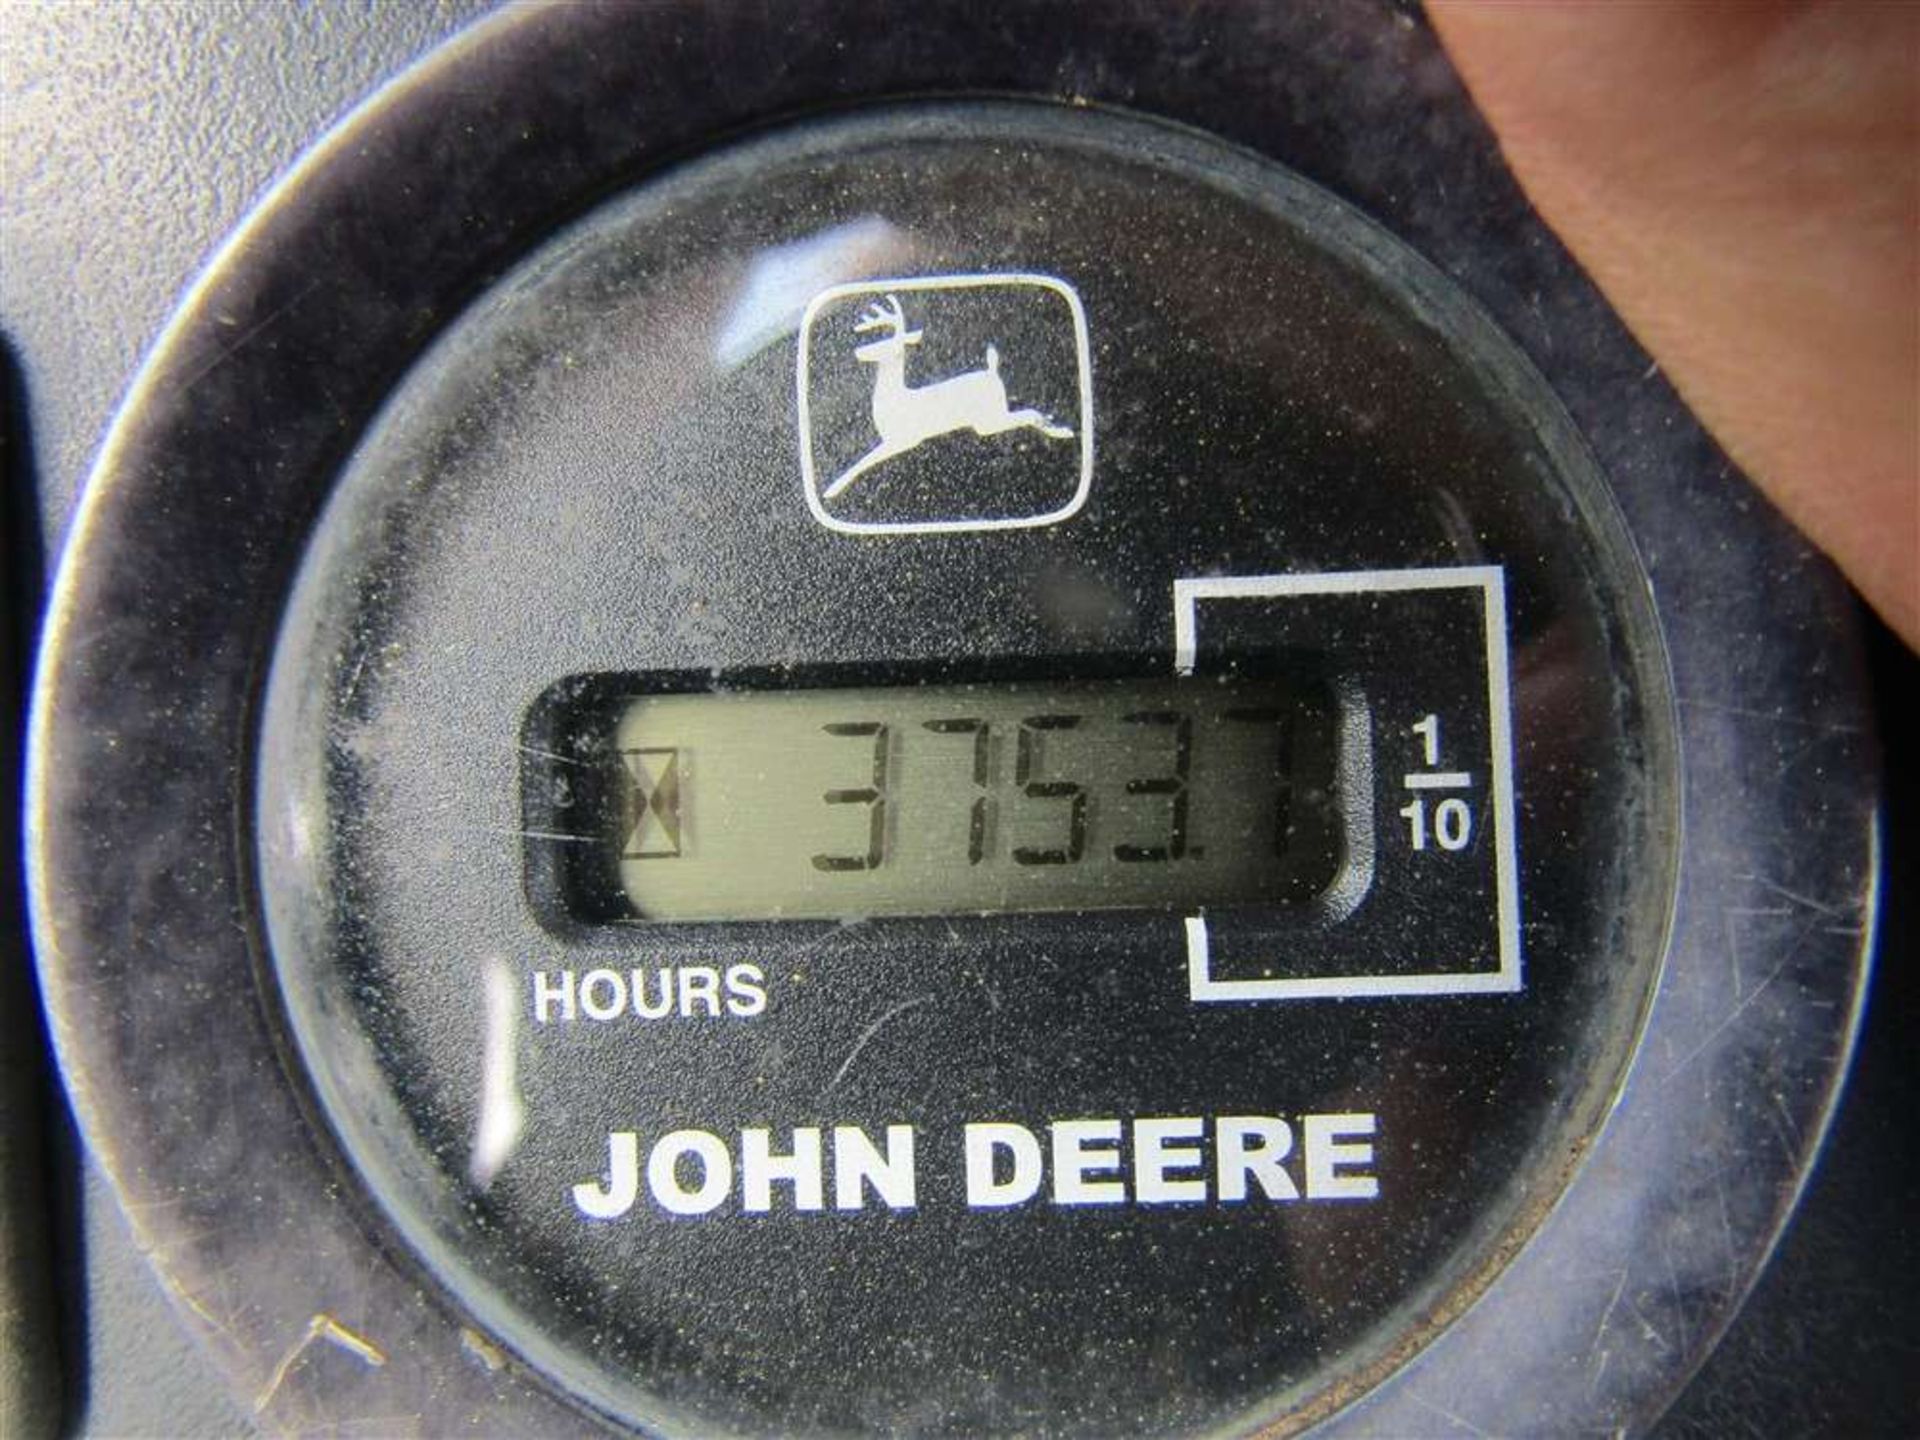 John Deere 4wd Diesel Gator Tipper - Image 5 of 5